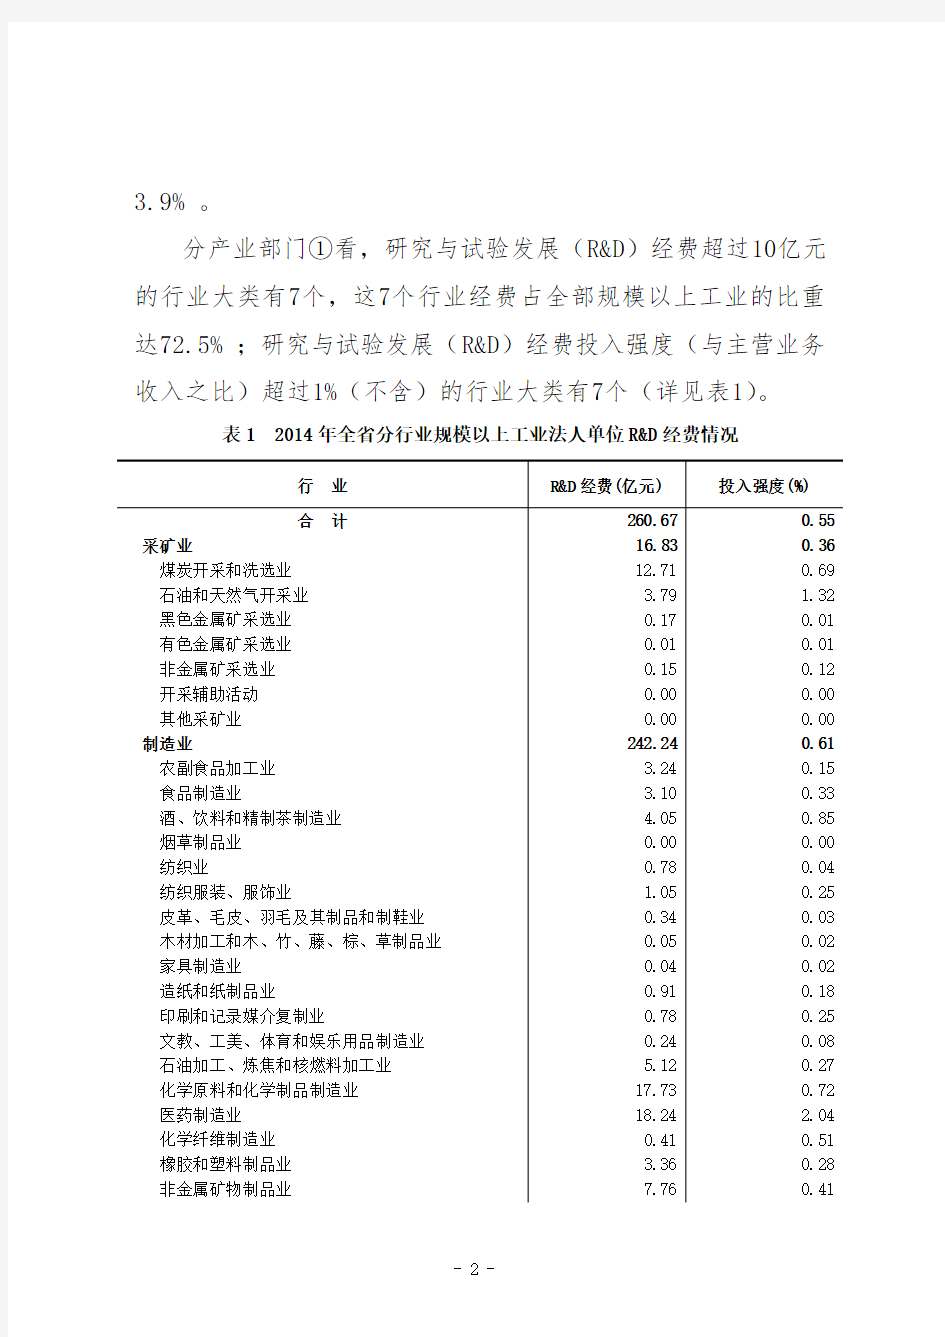 2014年河北省科技经费投入统计公报